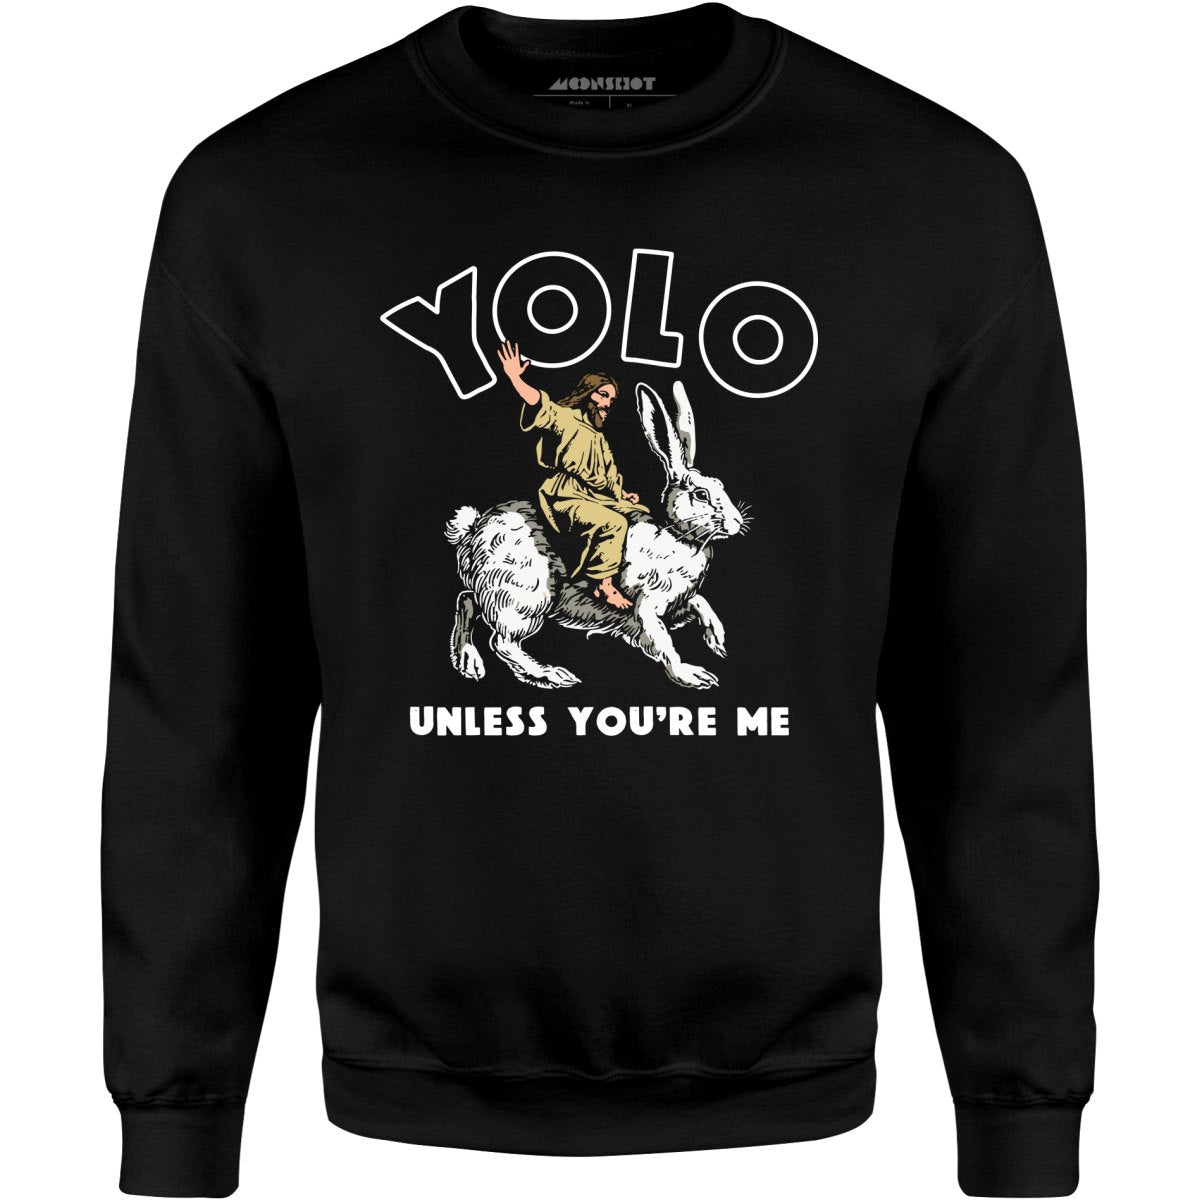 Yolo - Unless You're Me - Unisex Sweatshirt